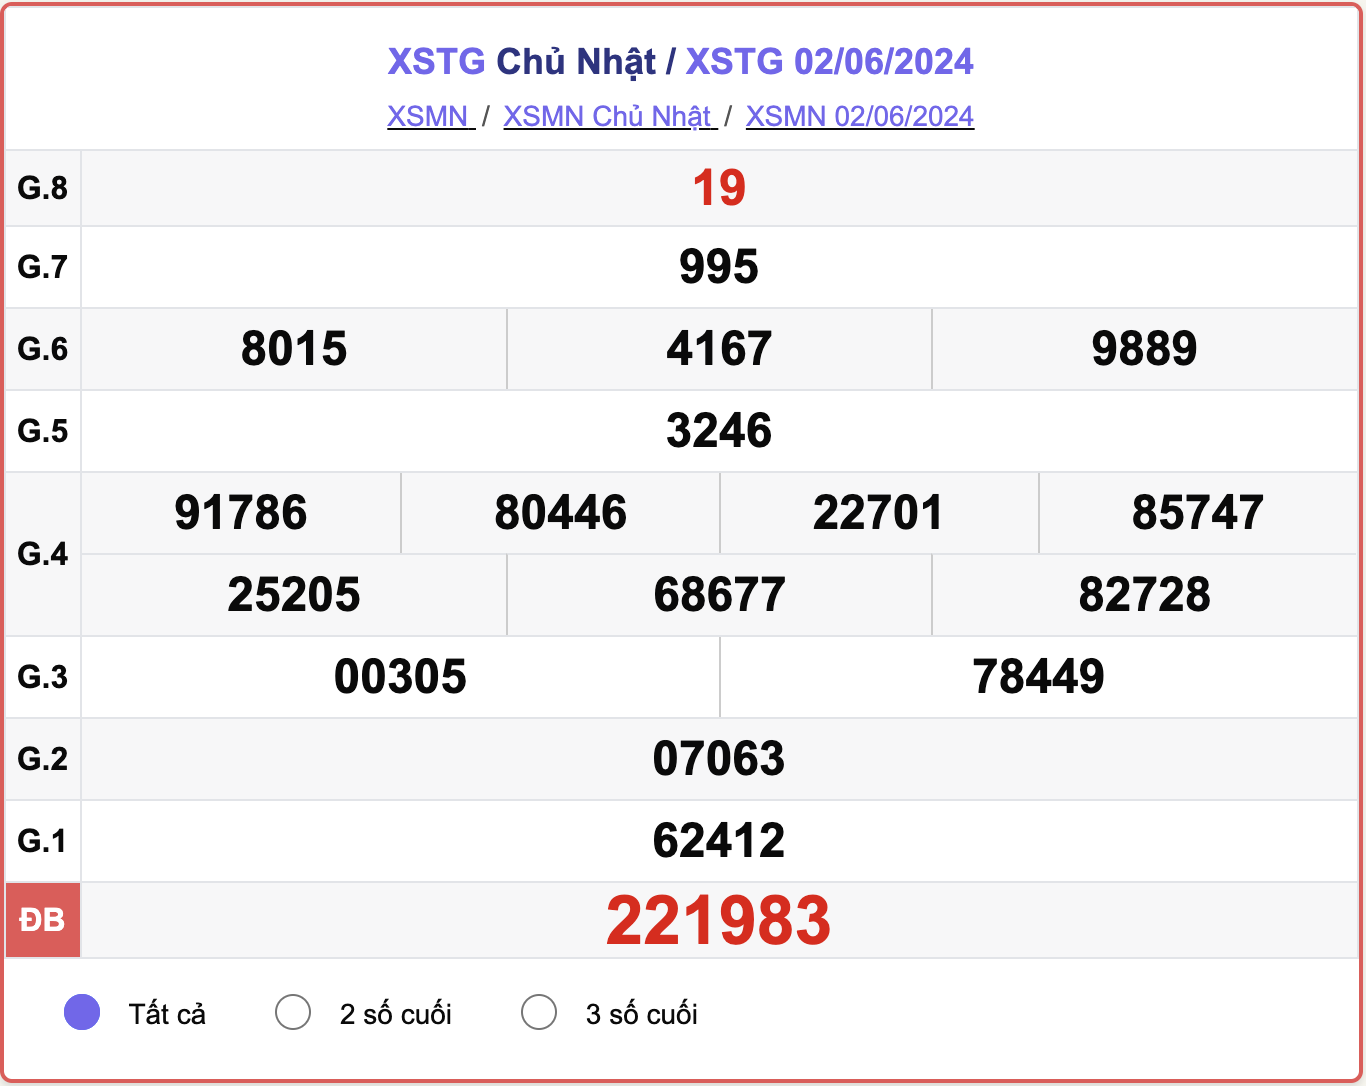 XSTG 2/6, kết quả xổ số Tiền Giang hôm nay 2/6/2024.